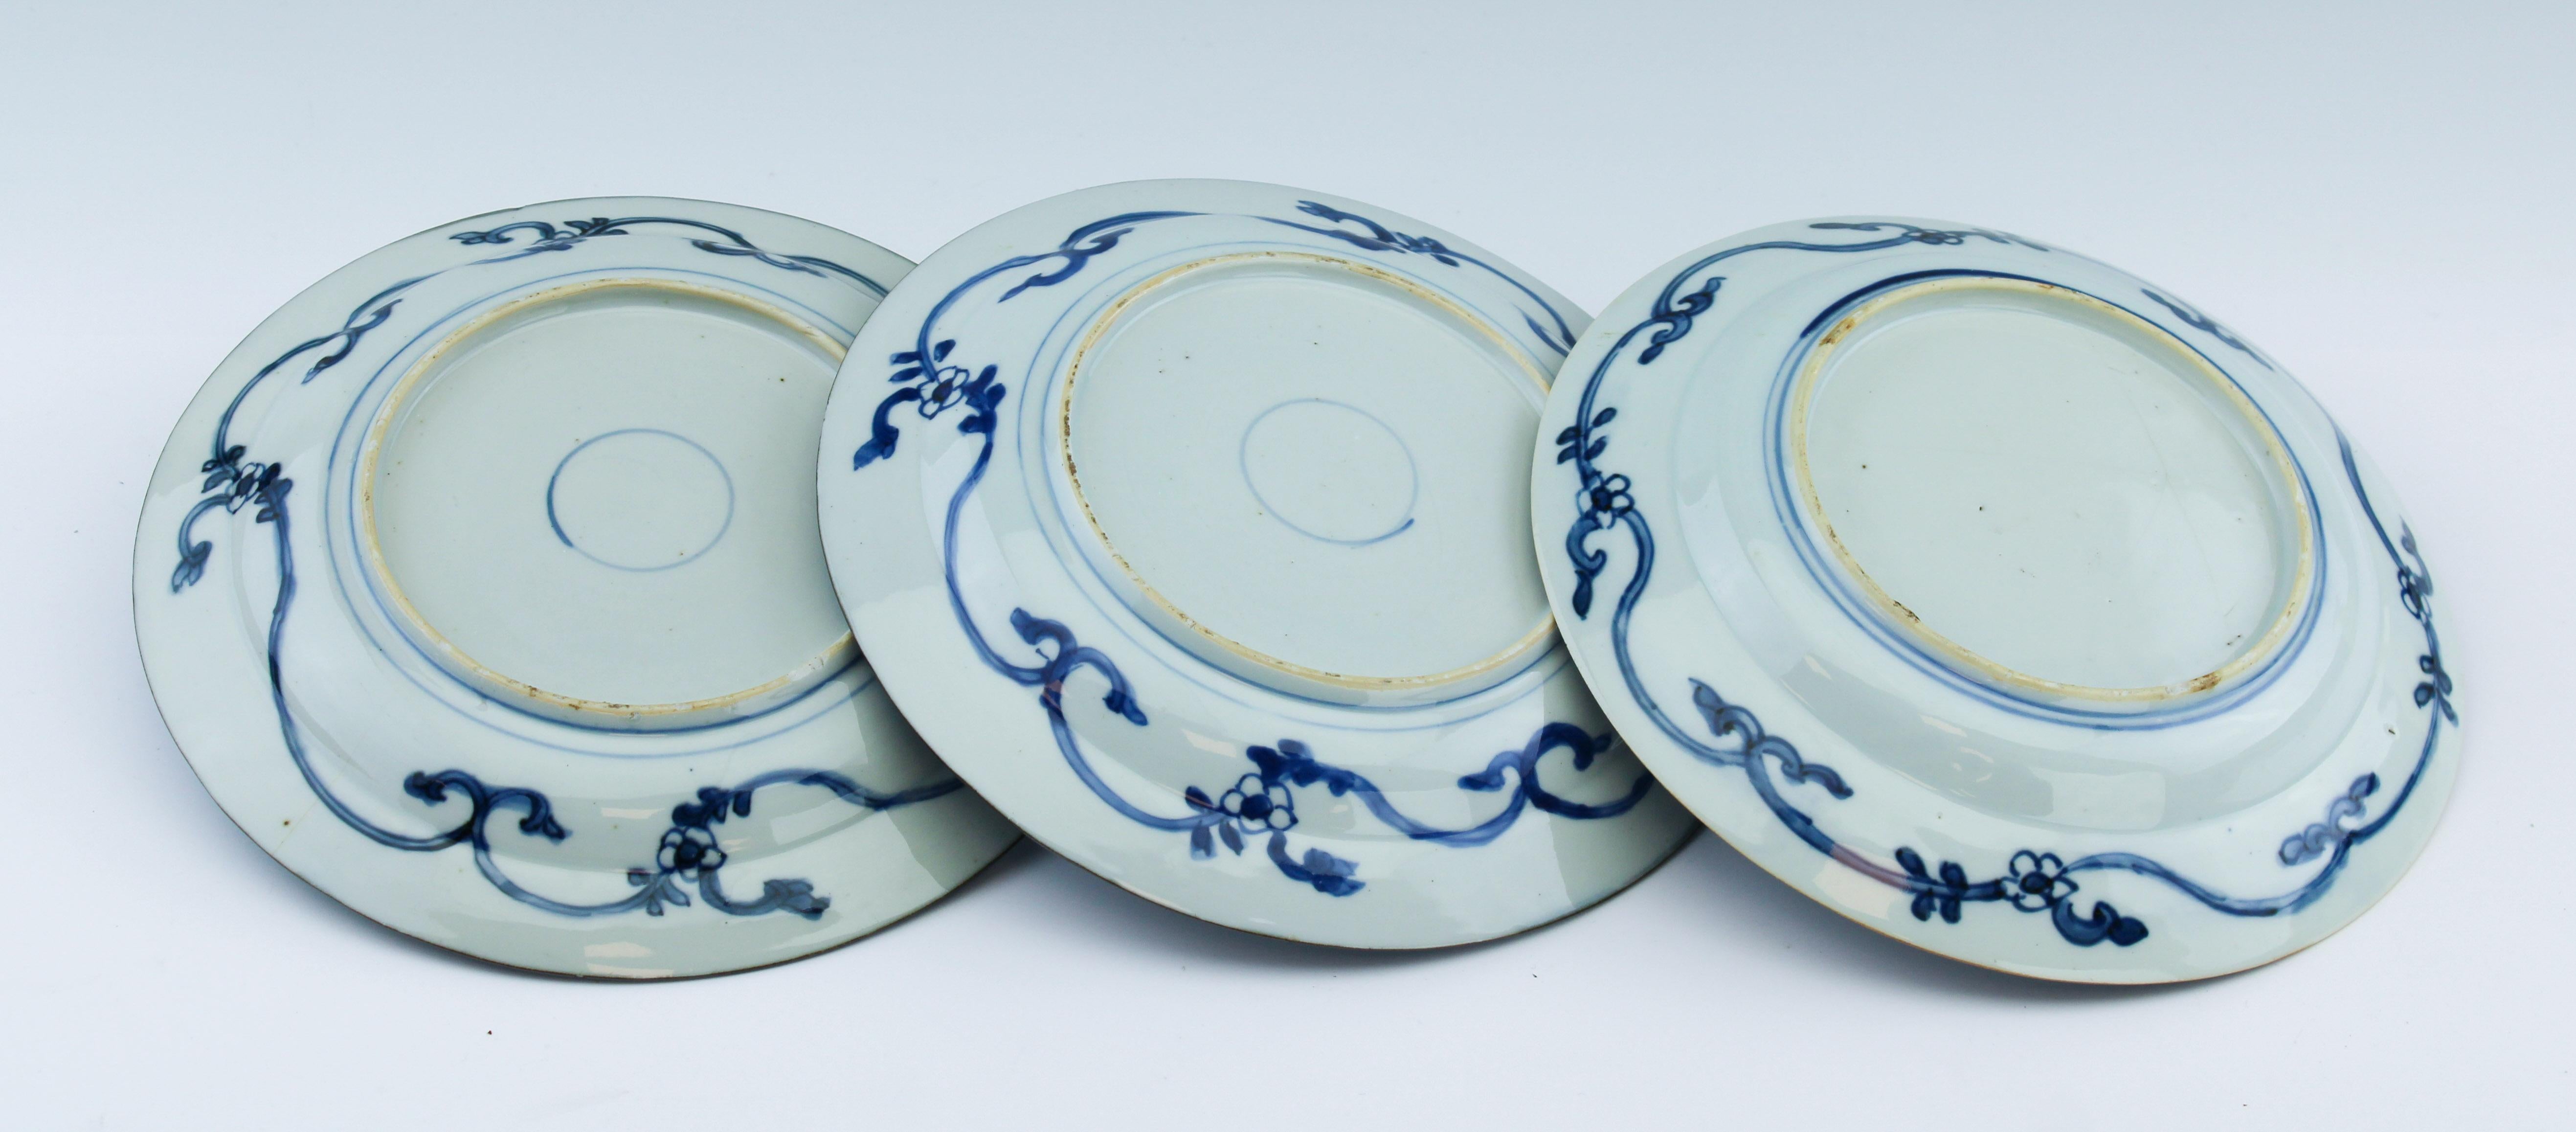 Qing #6 Antique Chinese Porcelain 18th C Kangxi Kraak Blue White Set Dinner Plates